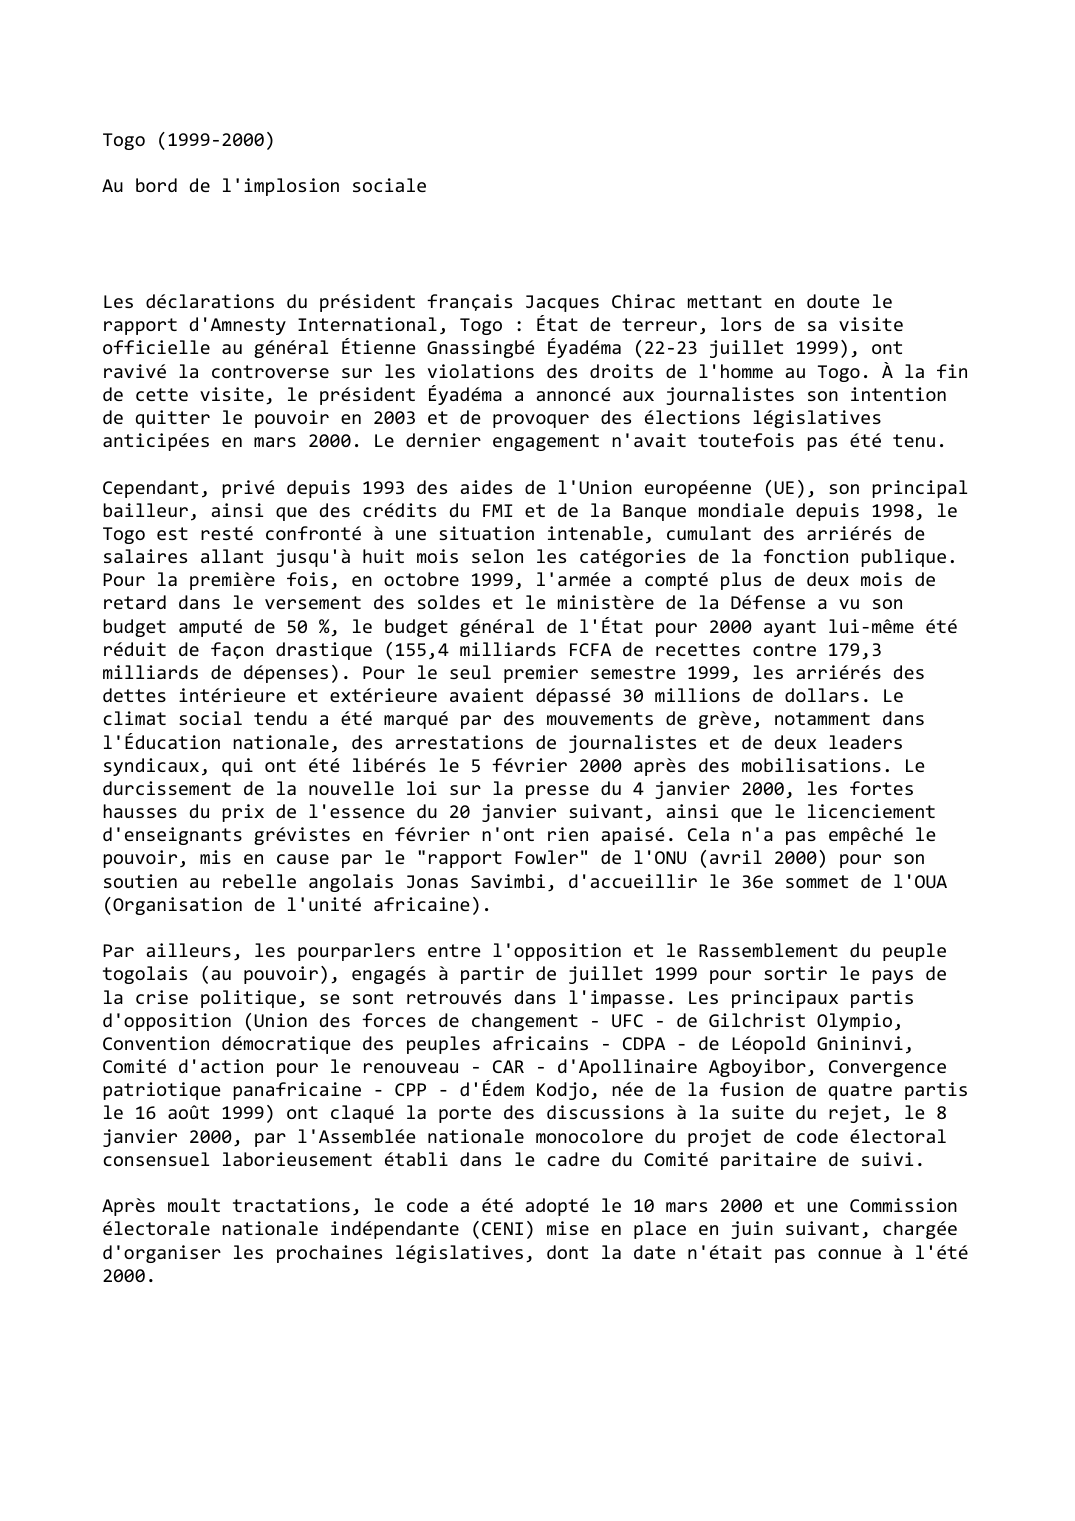 Prévisualisation du document Togo (1999-2000)

Au bord de l'implosion sociale